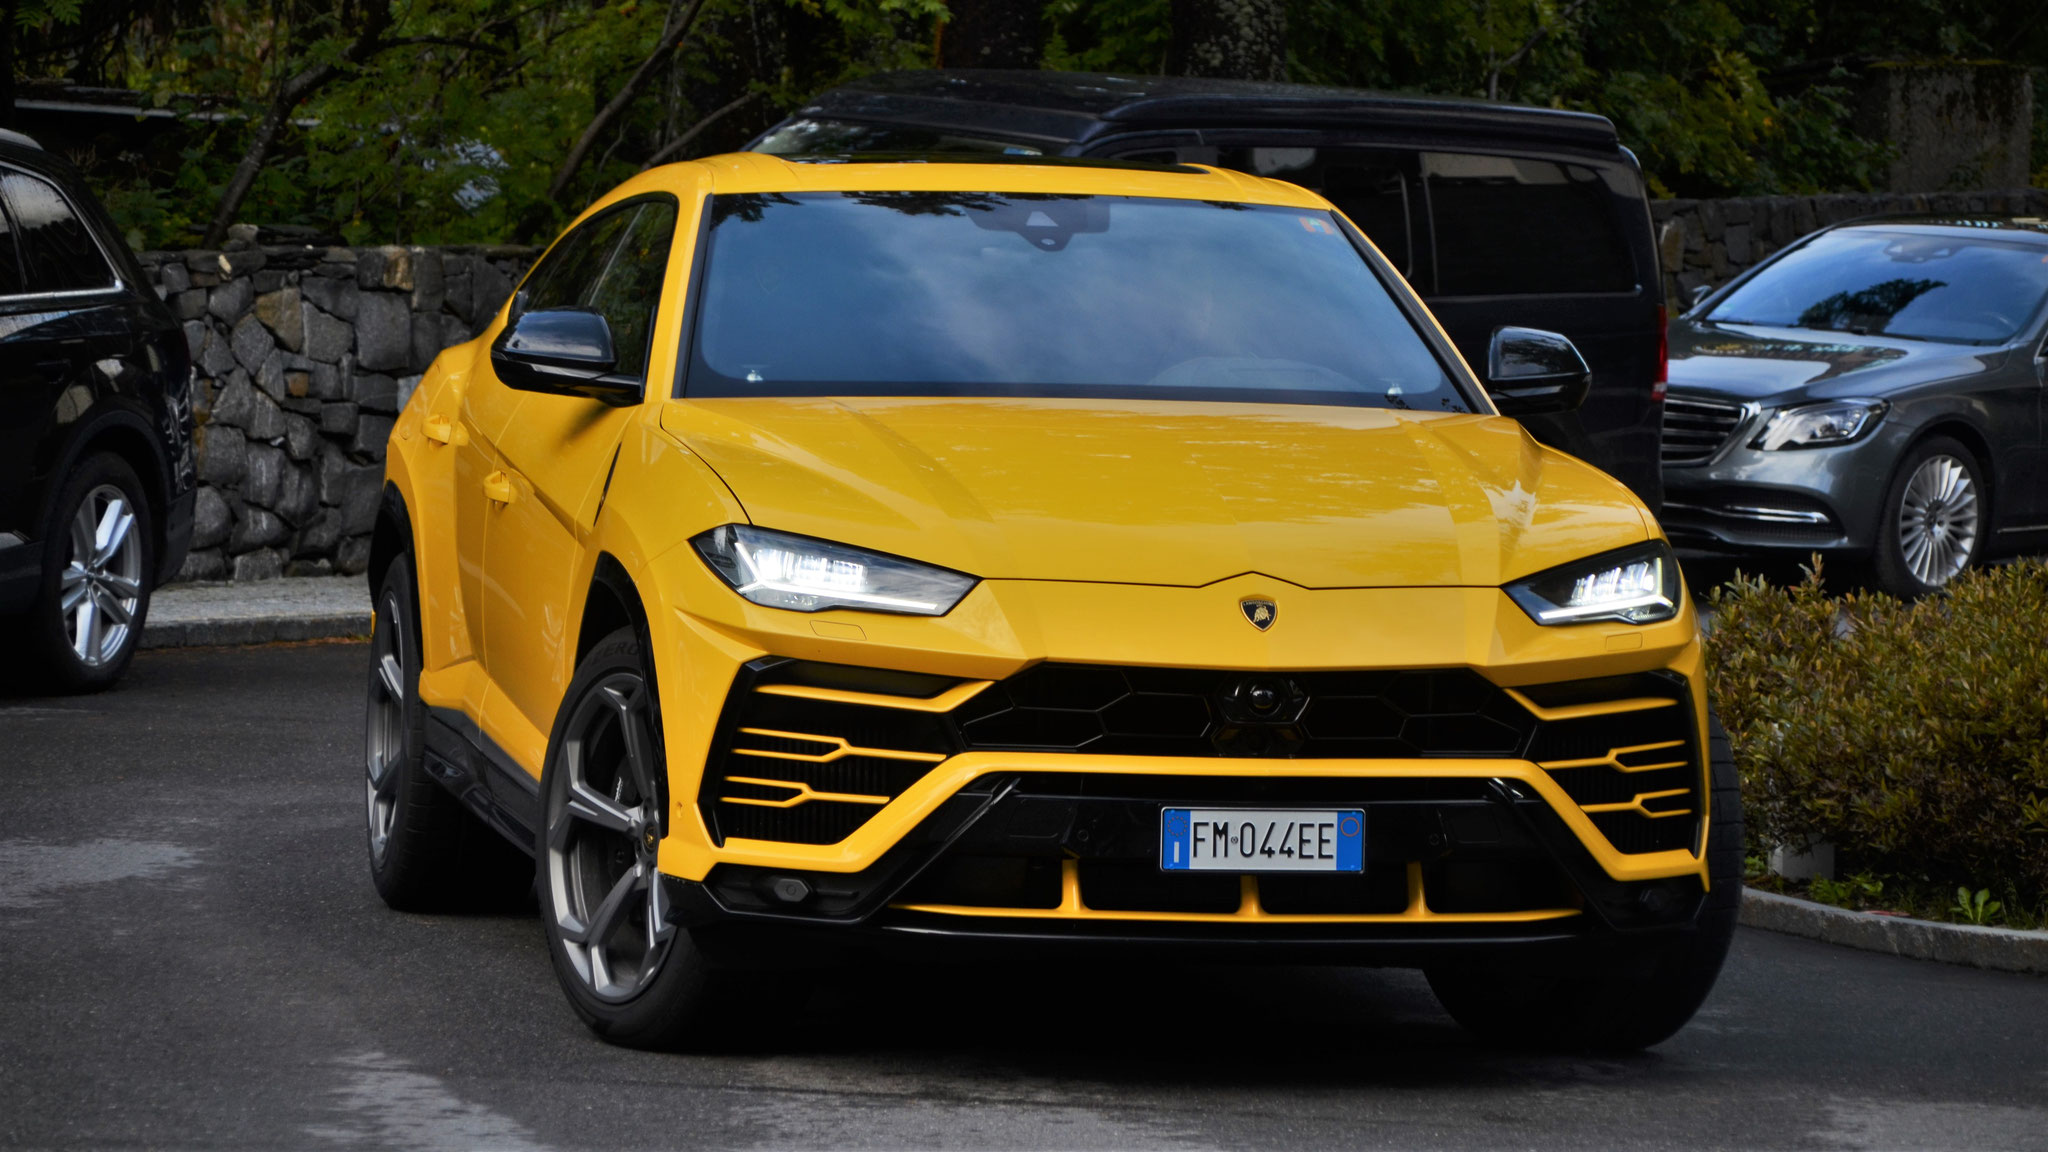 Lamborghini Urus - FM-044-EE (ITA)